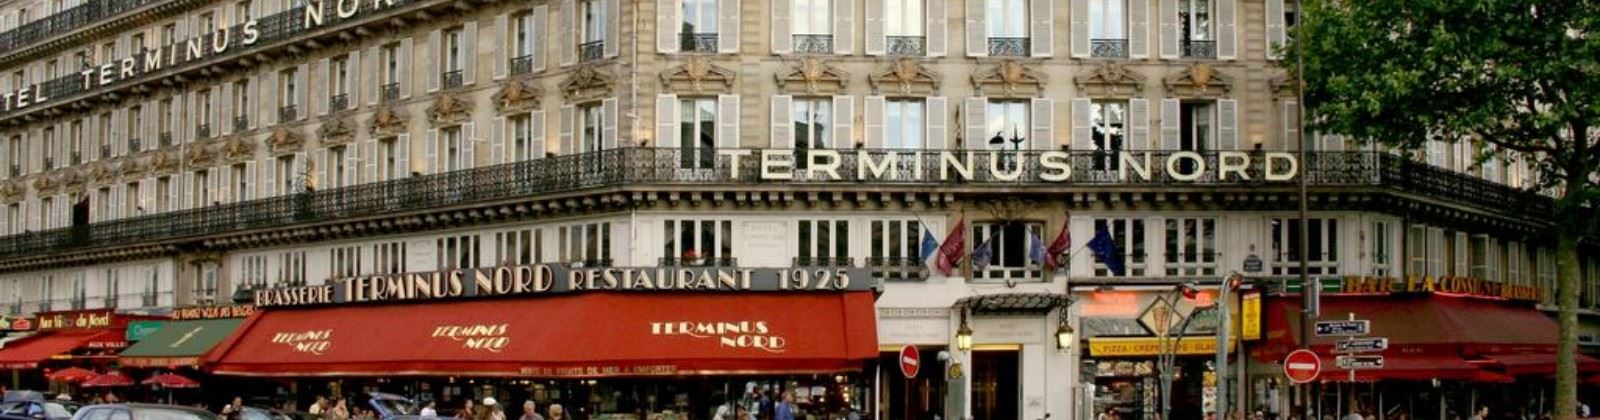 OLEVENE image - mercure-paris-terminus-nord-olevene-hotel-restaurant-booking-